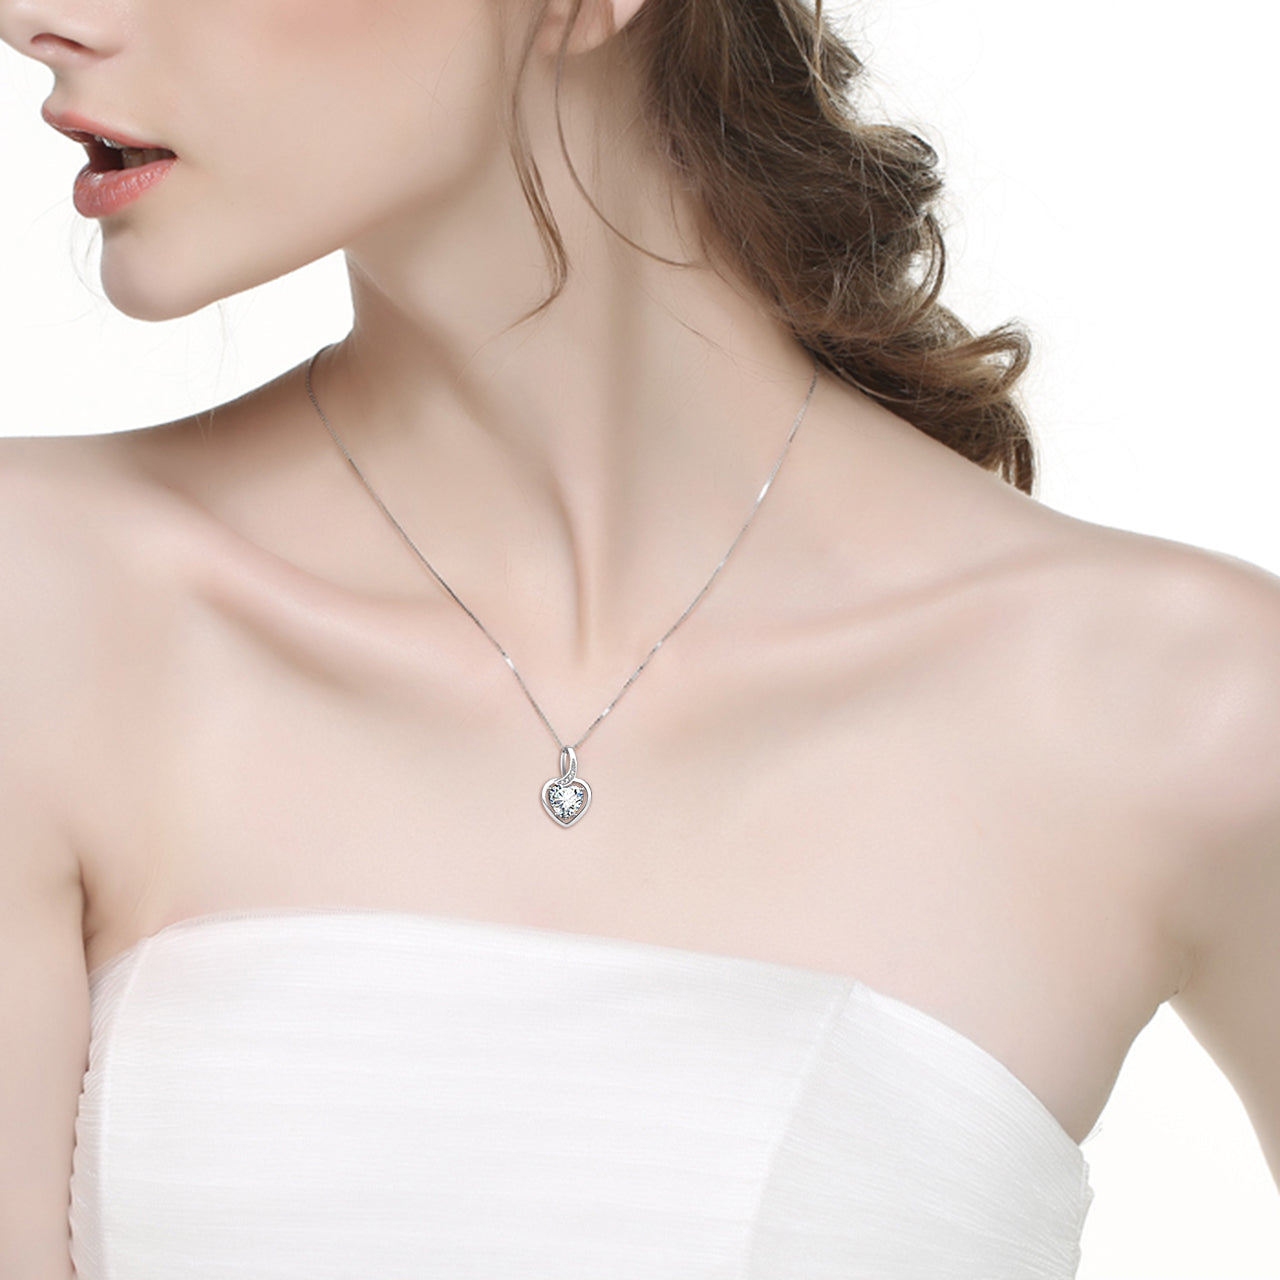 luxury heart necklace crystal bride bridesmaid wedding necklace